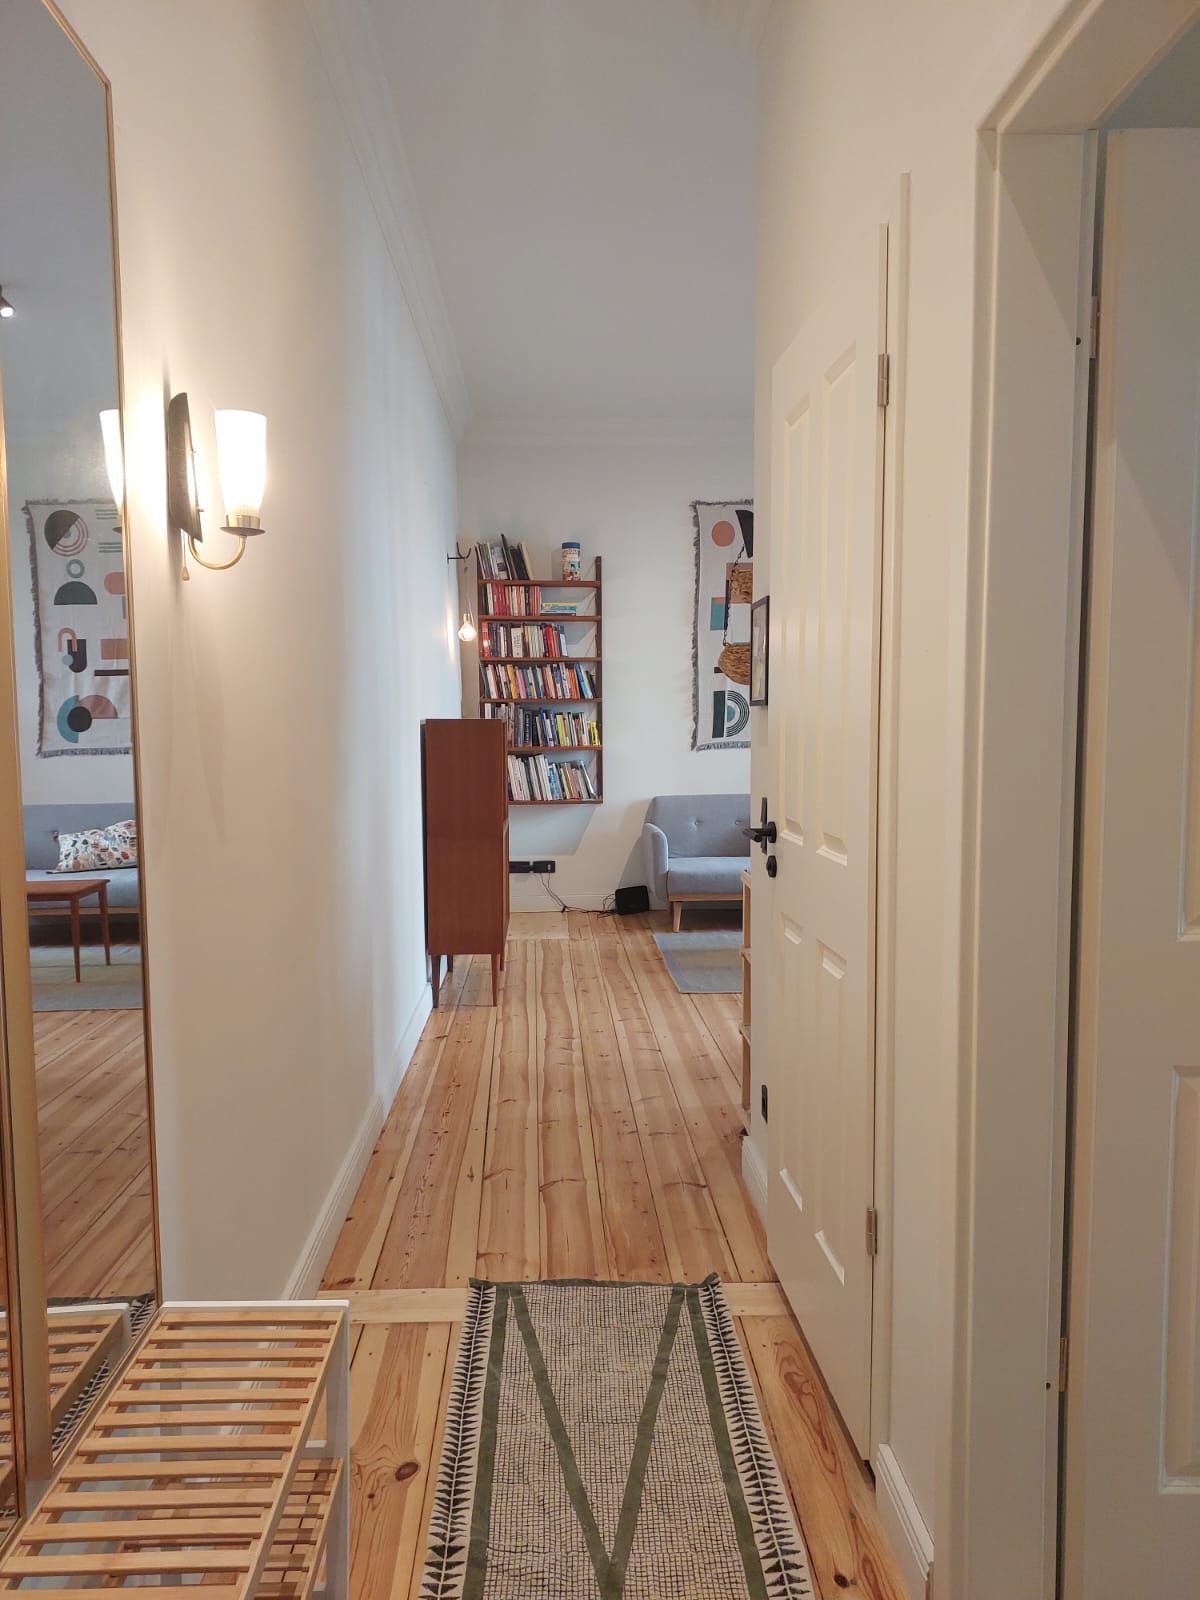 Exquisite 2-Room Flat with Designer Flair | Prime Neukölln Location! 🏡